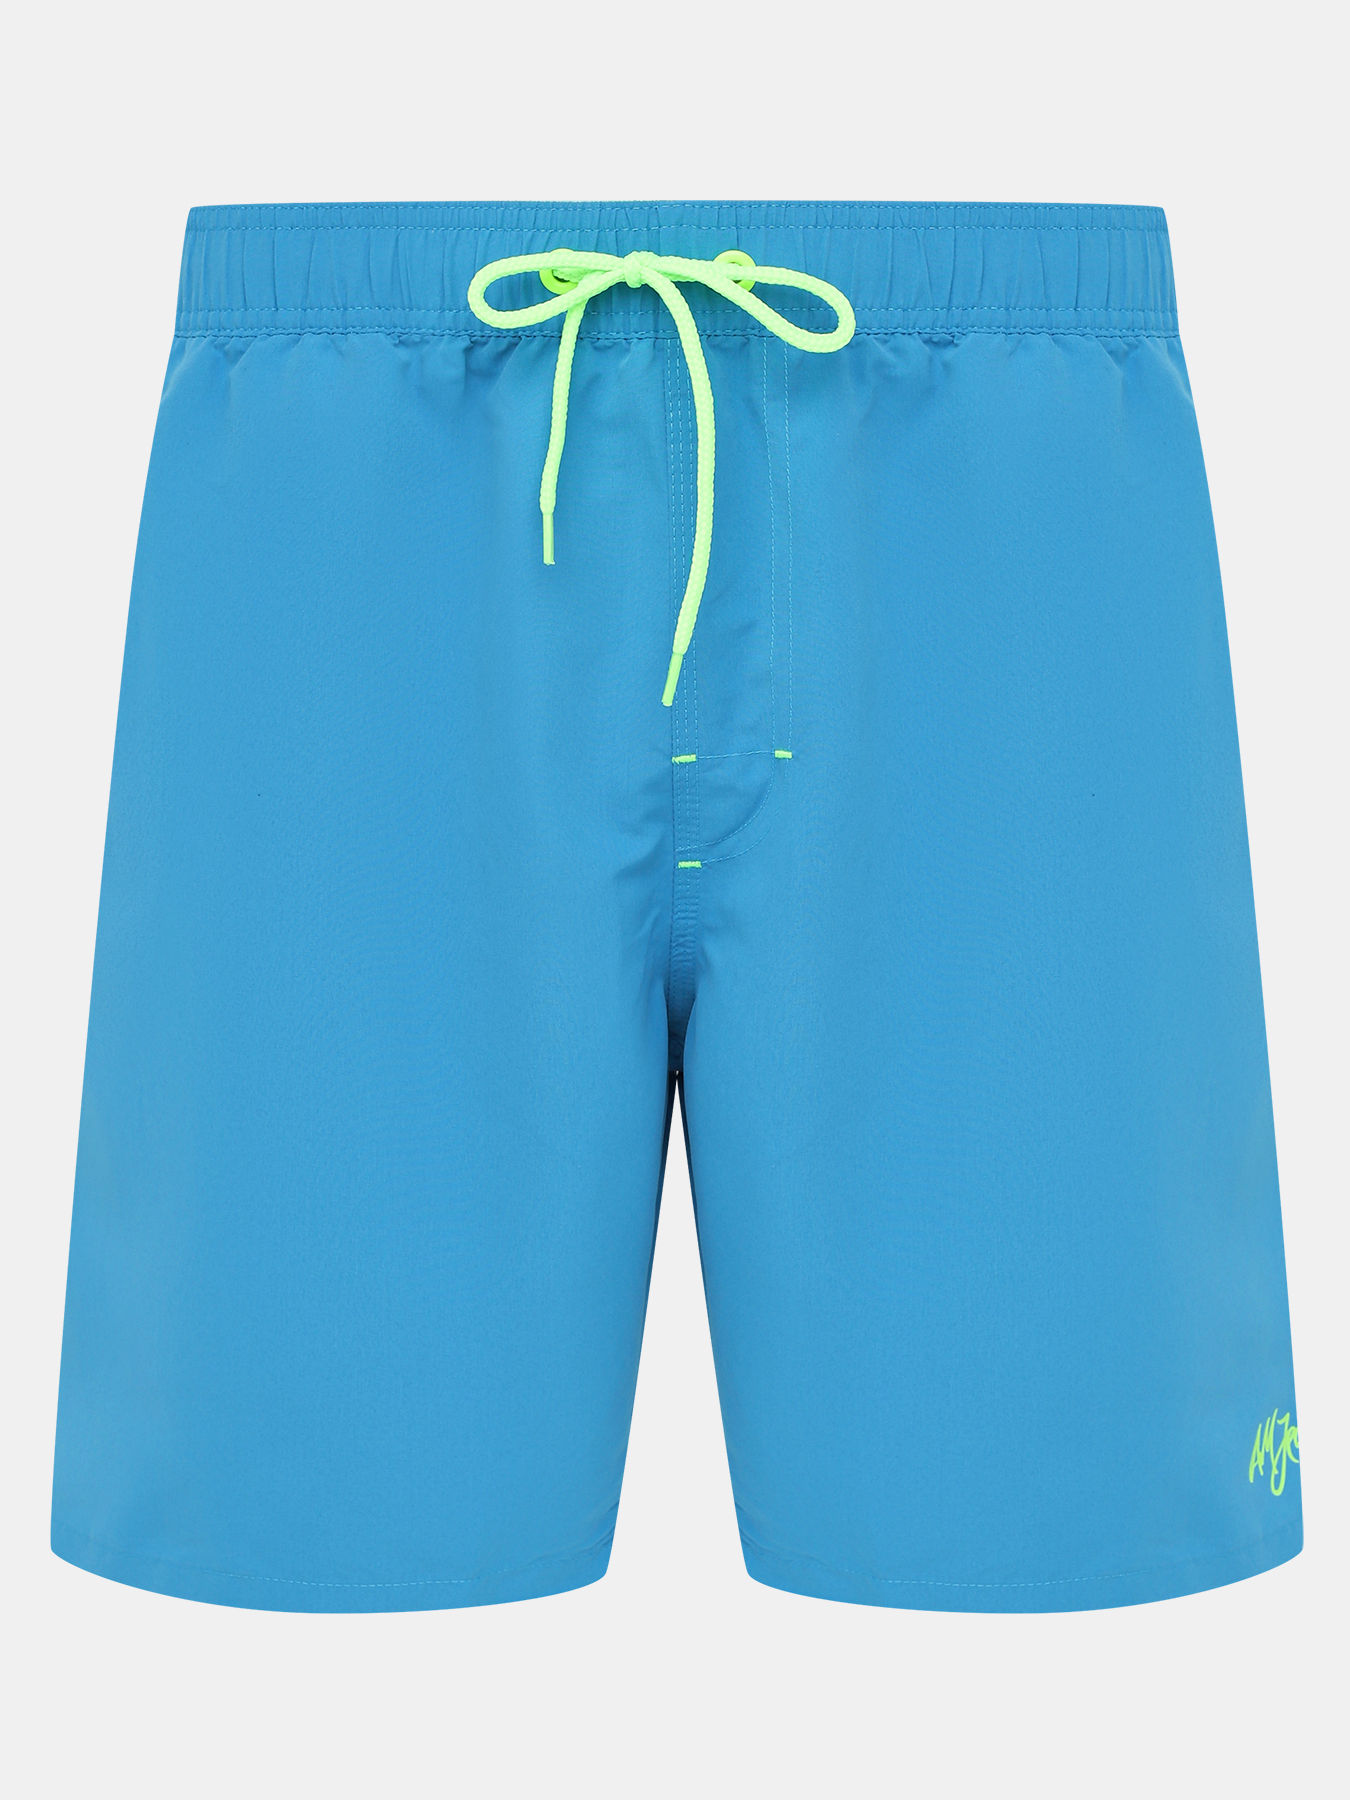 Шорты плавательные Alessandro Manzoni Jeans 395802-028, цвет голубой, размер 54